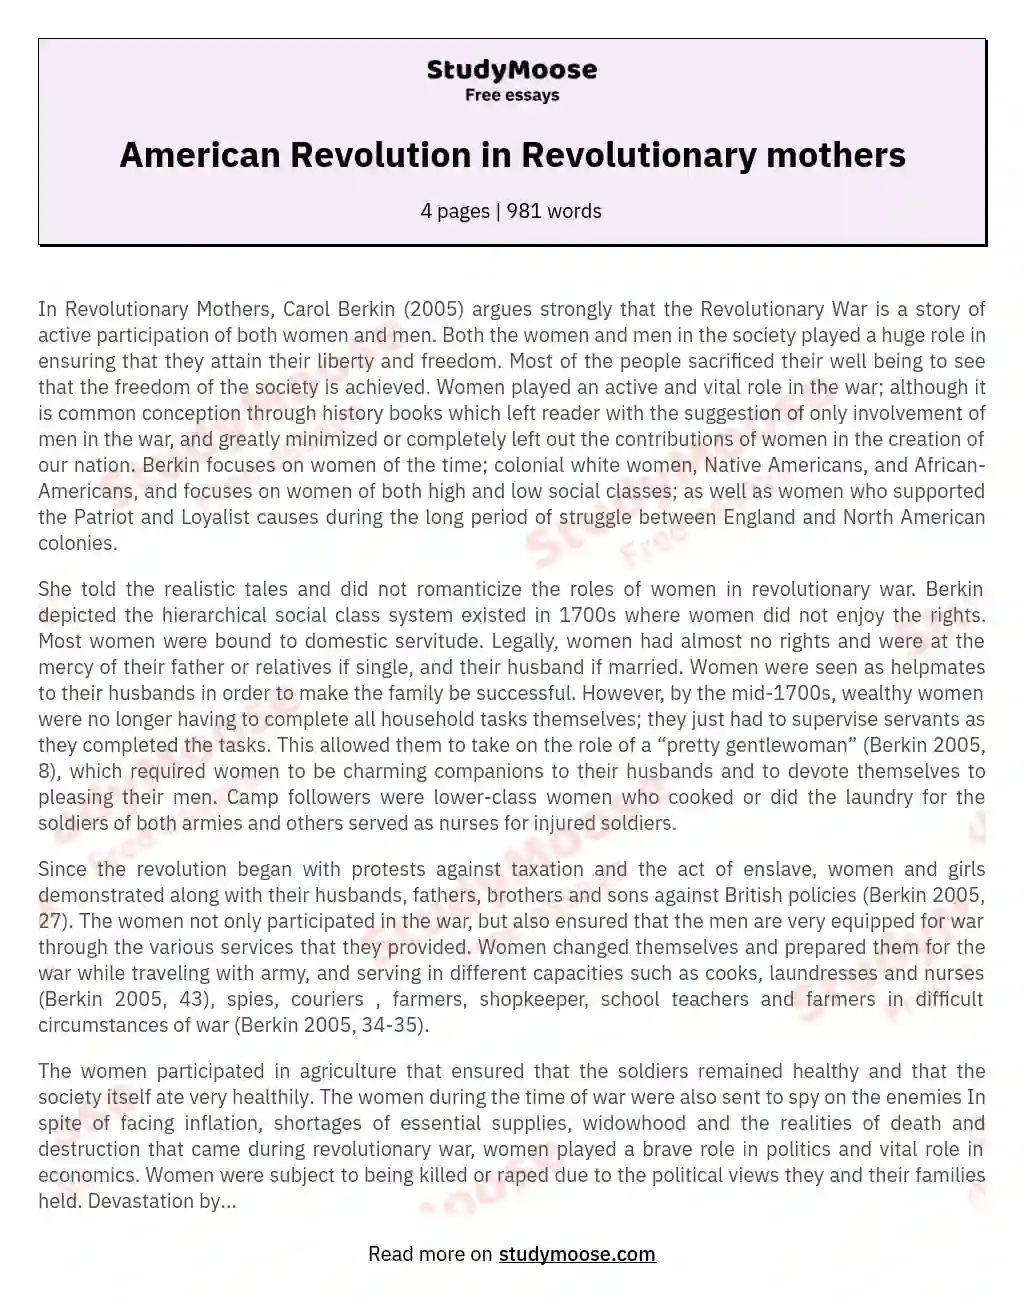 American Revolution in Revolutionary mothers